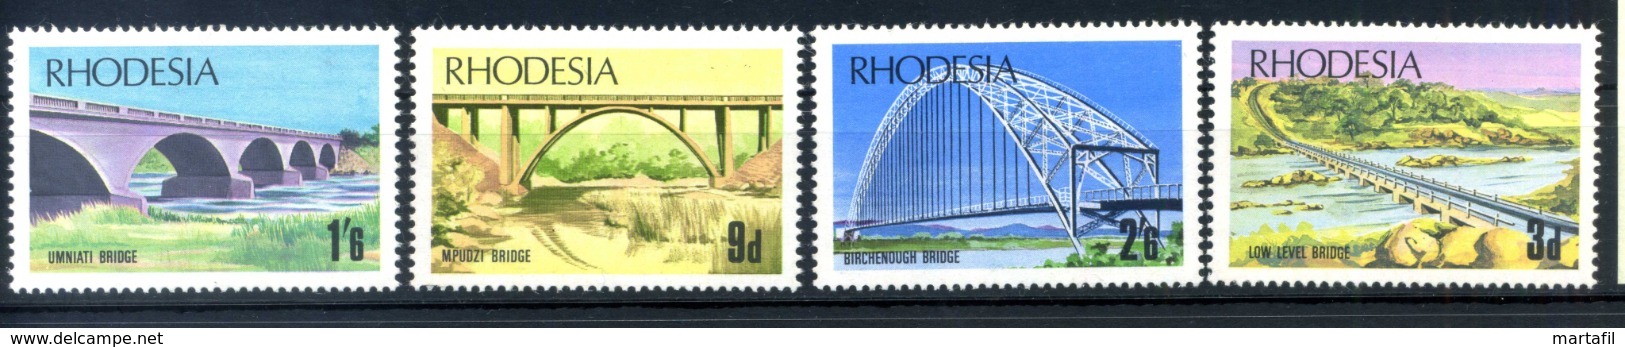 1969 RHODESIA SET MNH ** - Rhodesië (1964-1980)